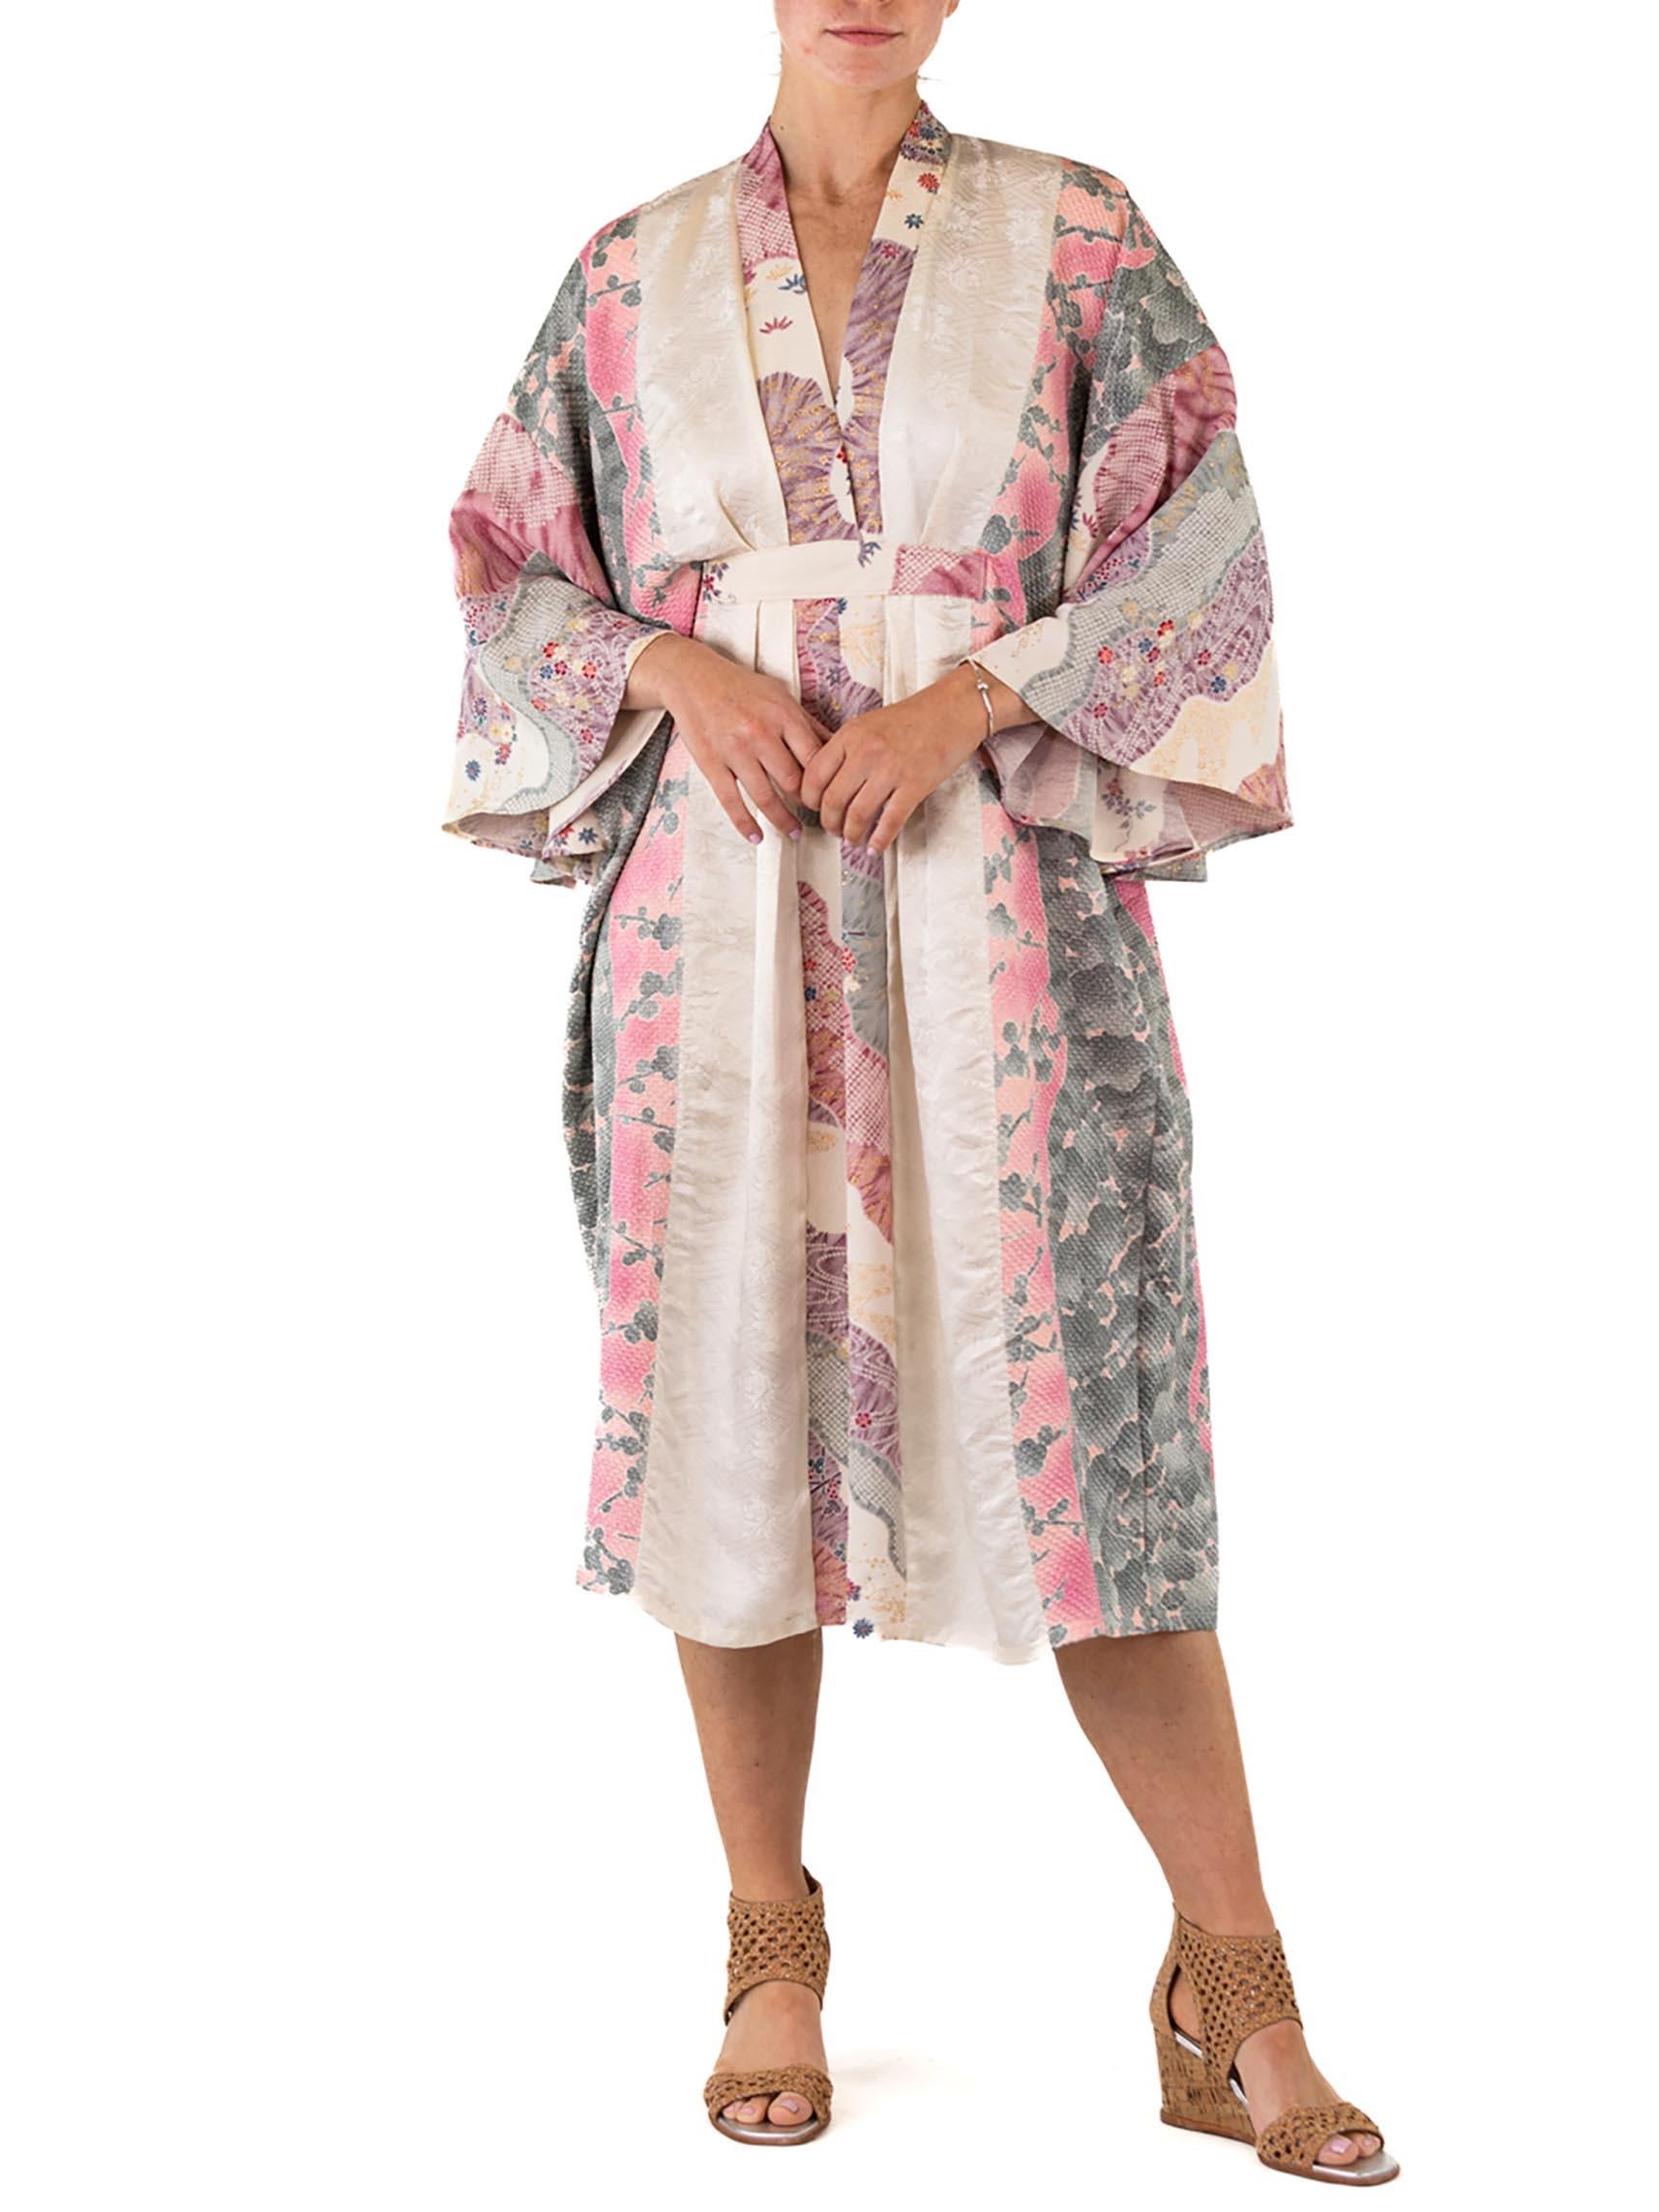 Women's MORPHEW COLLECTION White & Purple Floral Print Japanese Kimono Silk Kaftan